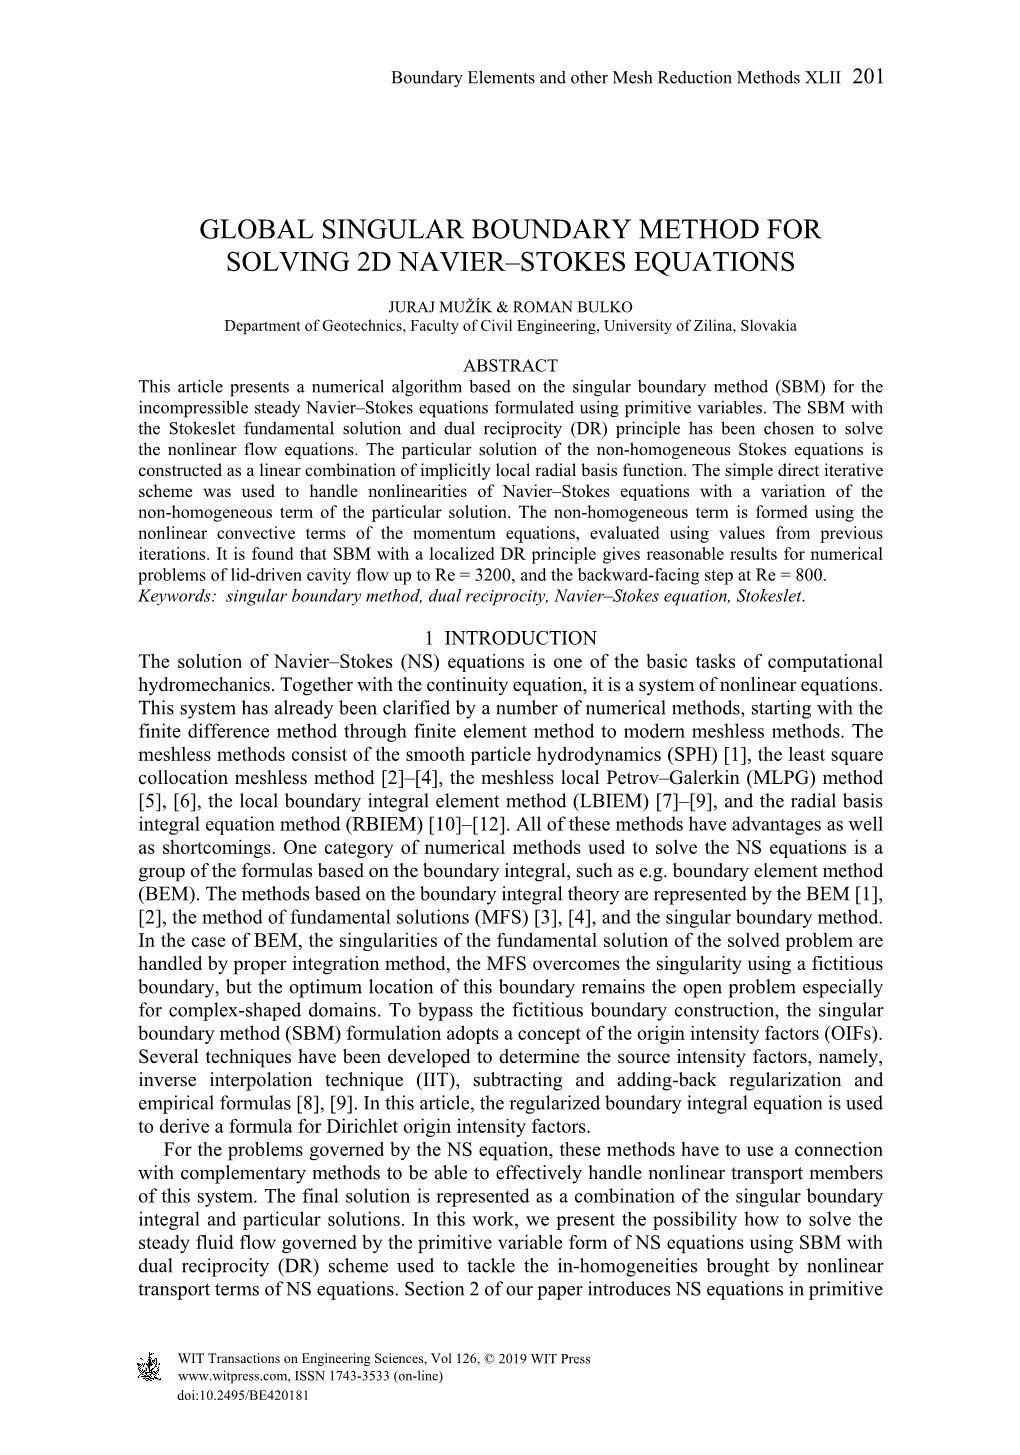 Global Singular Boundary Method for Solving 2D Navier–Stokes Equations